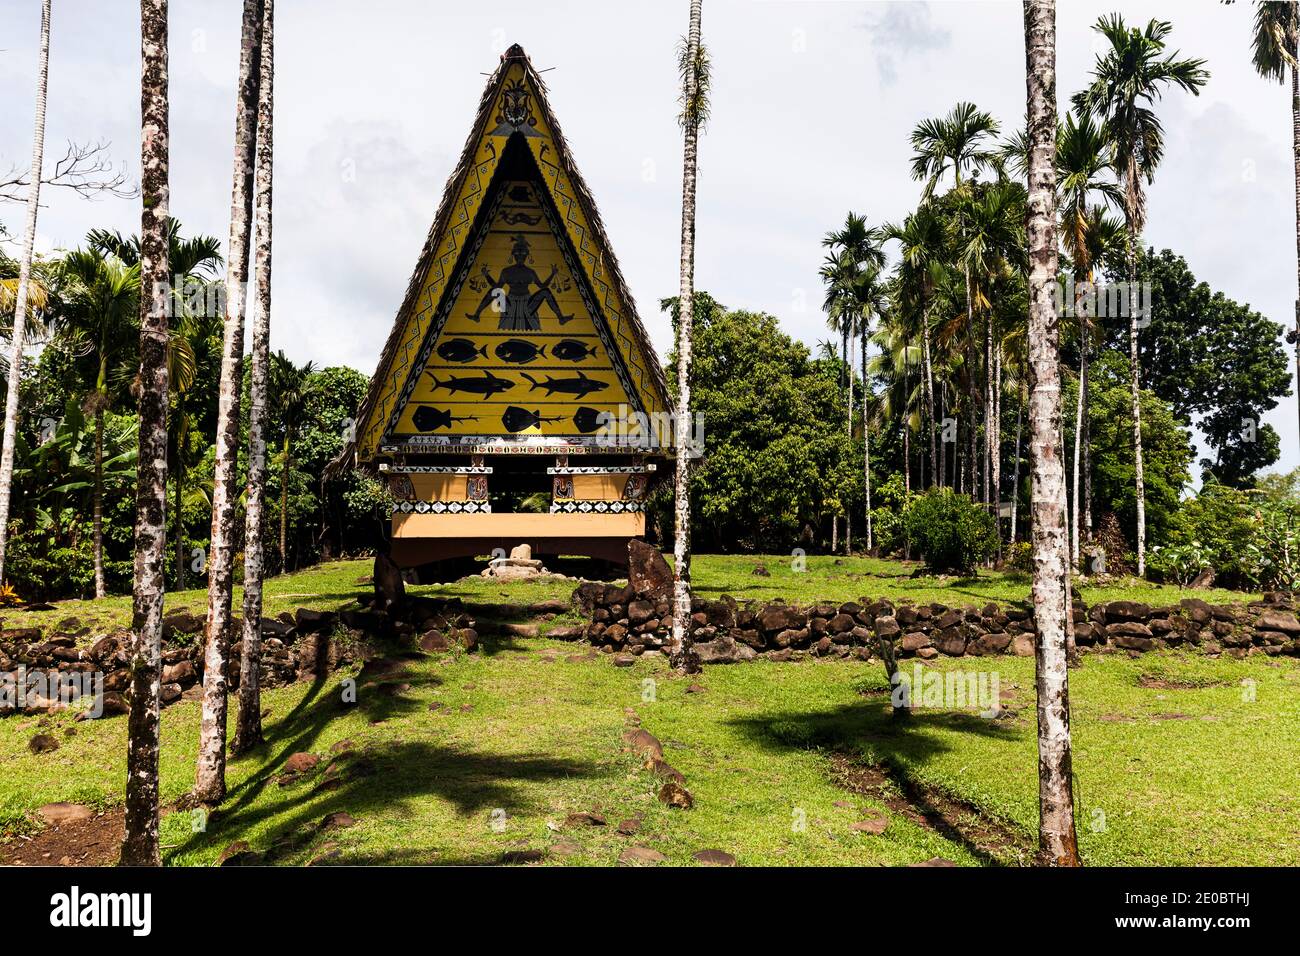 Bai Rekeai, Bai est une maison traditionnelle en bois, maison de rencontre pour hommes, lieu de rassemblement pour hommes, Aimeliik, île de Babeldaob, Palaos, Micronésie, Océanie Banque D'Images